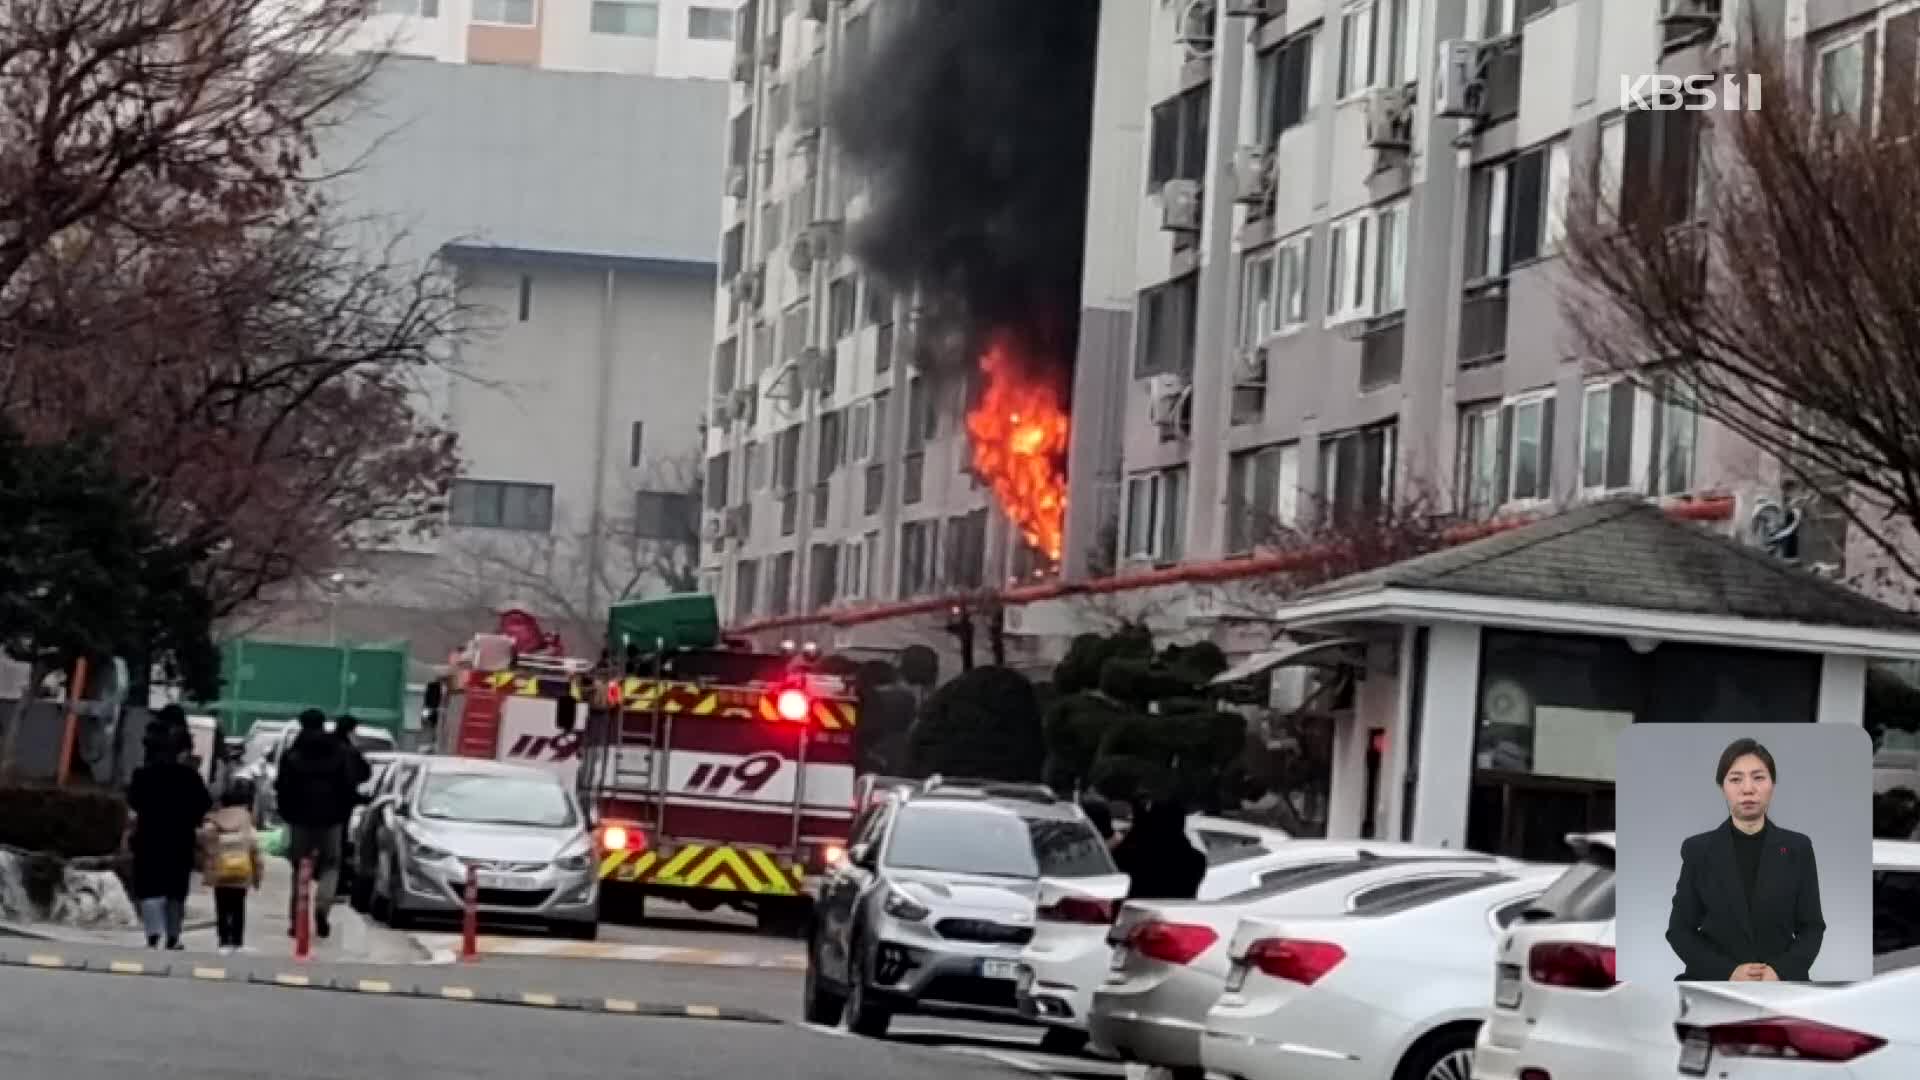 대전 아파트 2층에서 큰 불…7명 부상·21명 구조